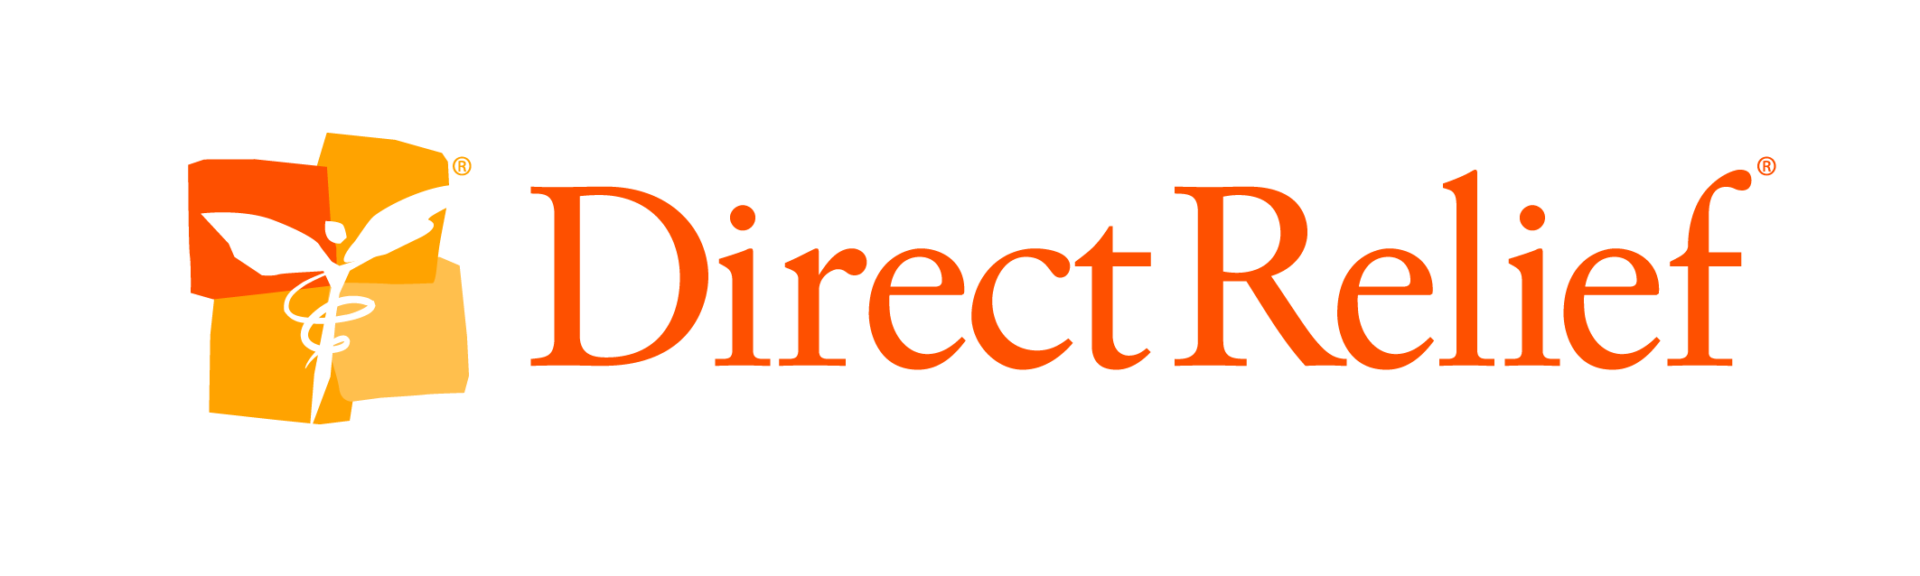 DirectRelief.png